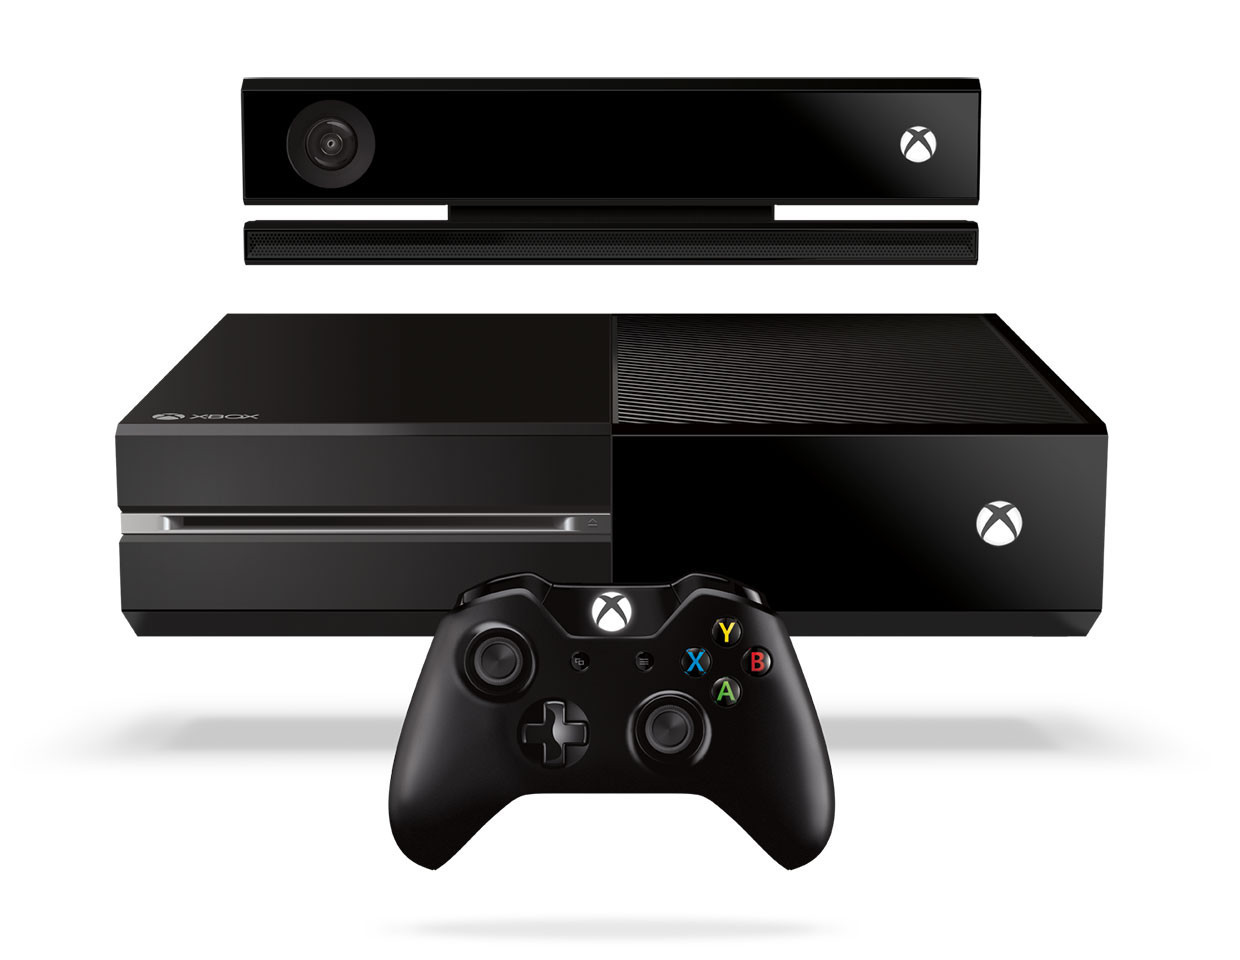 Entretiens Xbox One - Arnaud De Grave, rédacteur en chef de Consoles-Fan